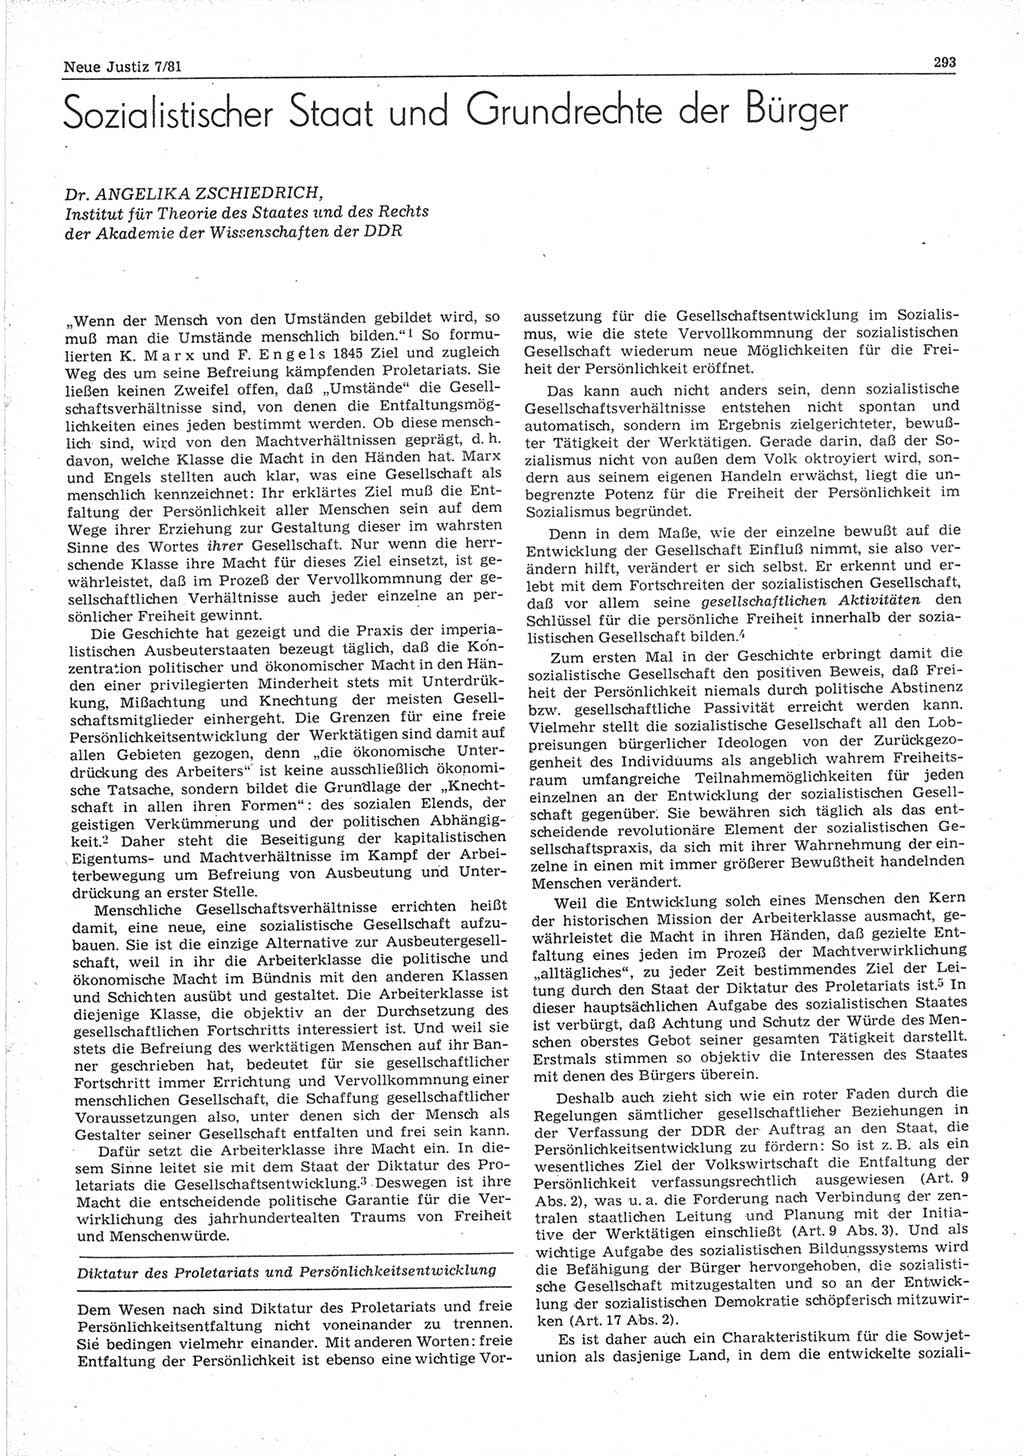 Neue Justiz (NJ), Zeitschrift für sozialistisches Recht und Gesetzlichkeit [Deutsche Demokratische Republik (DDR)], 35. Jahrgang 1981, Seite 293 (NJ DDR 1981, S. 293)